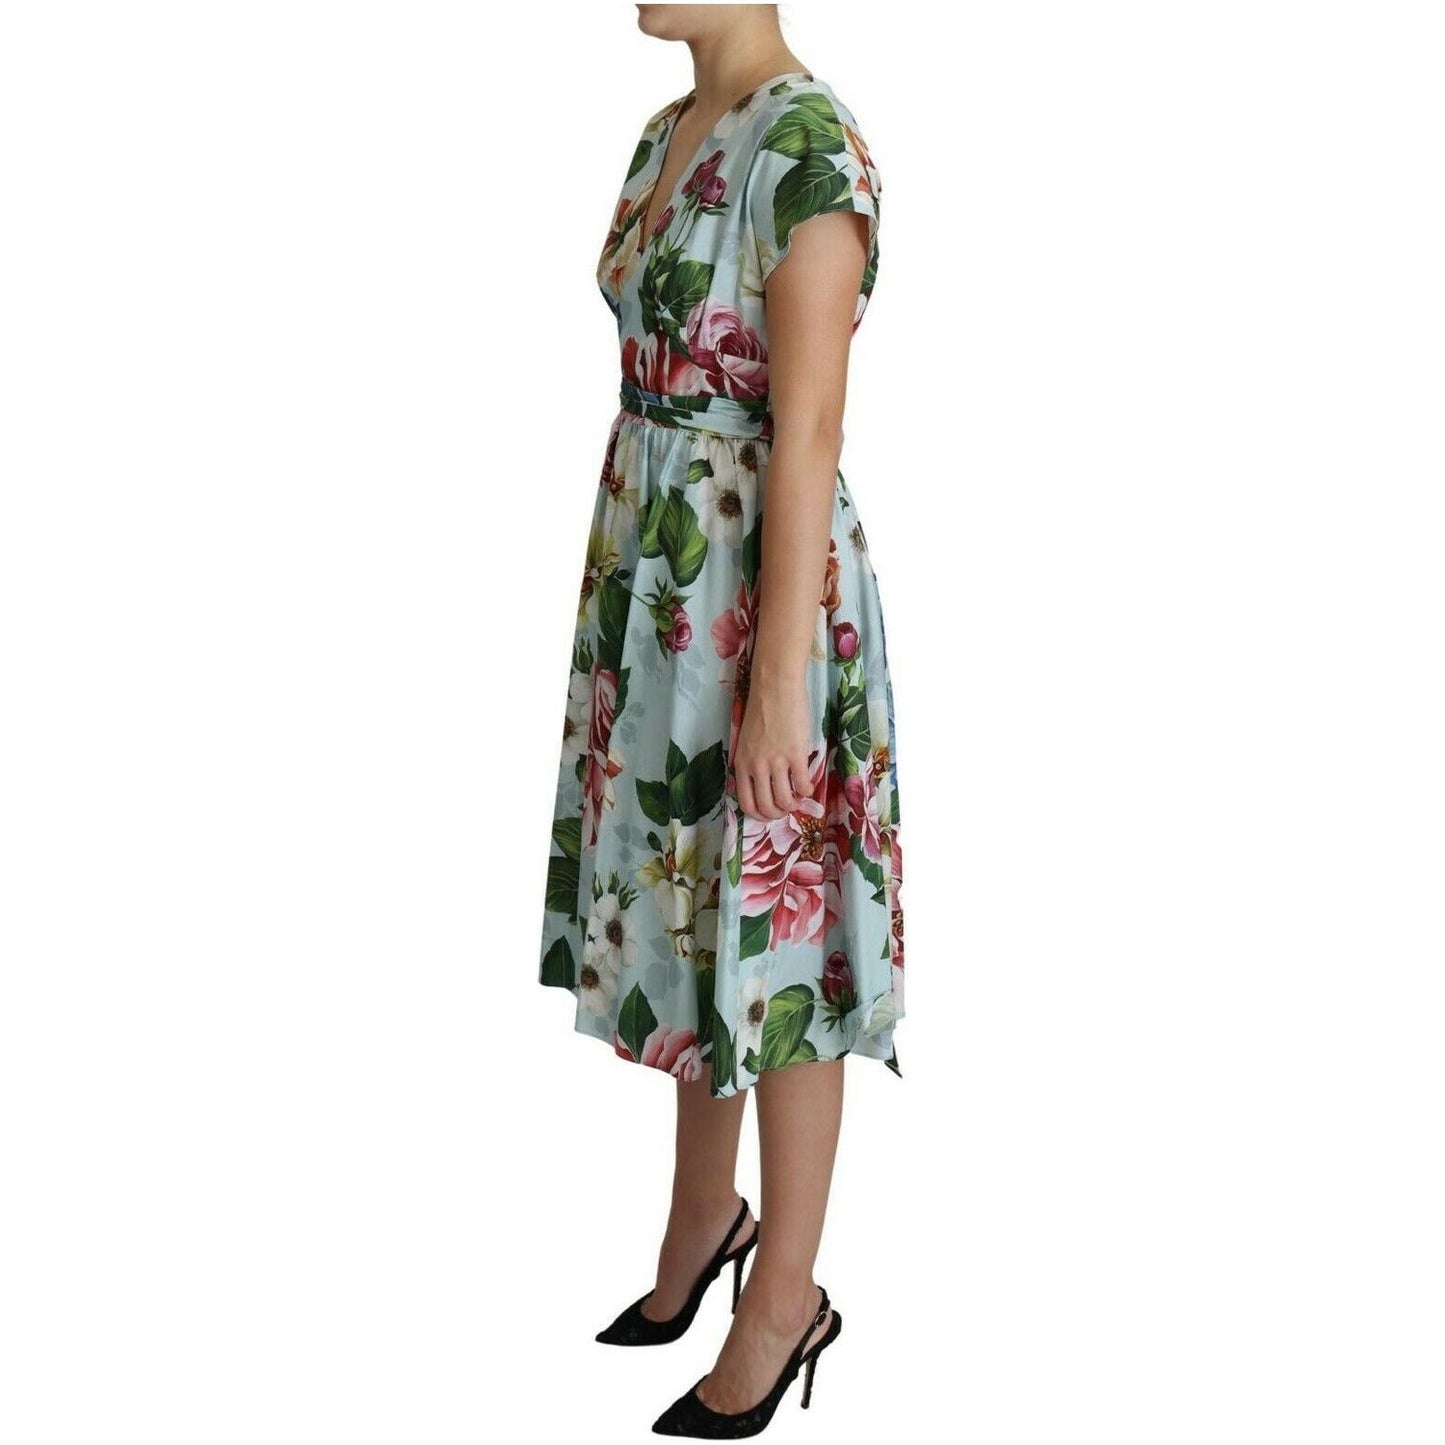 Dolce & Gabbana Floral Elegance V-Neck Cotton Dress WOMAN DRESSES green-floral-short-sleeves-v-neck-dress